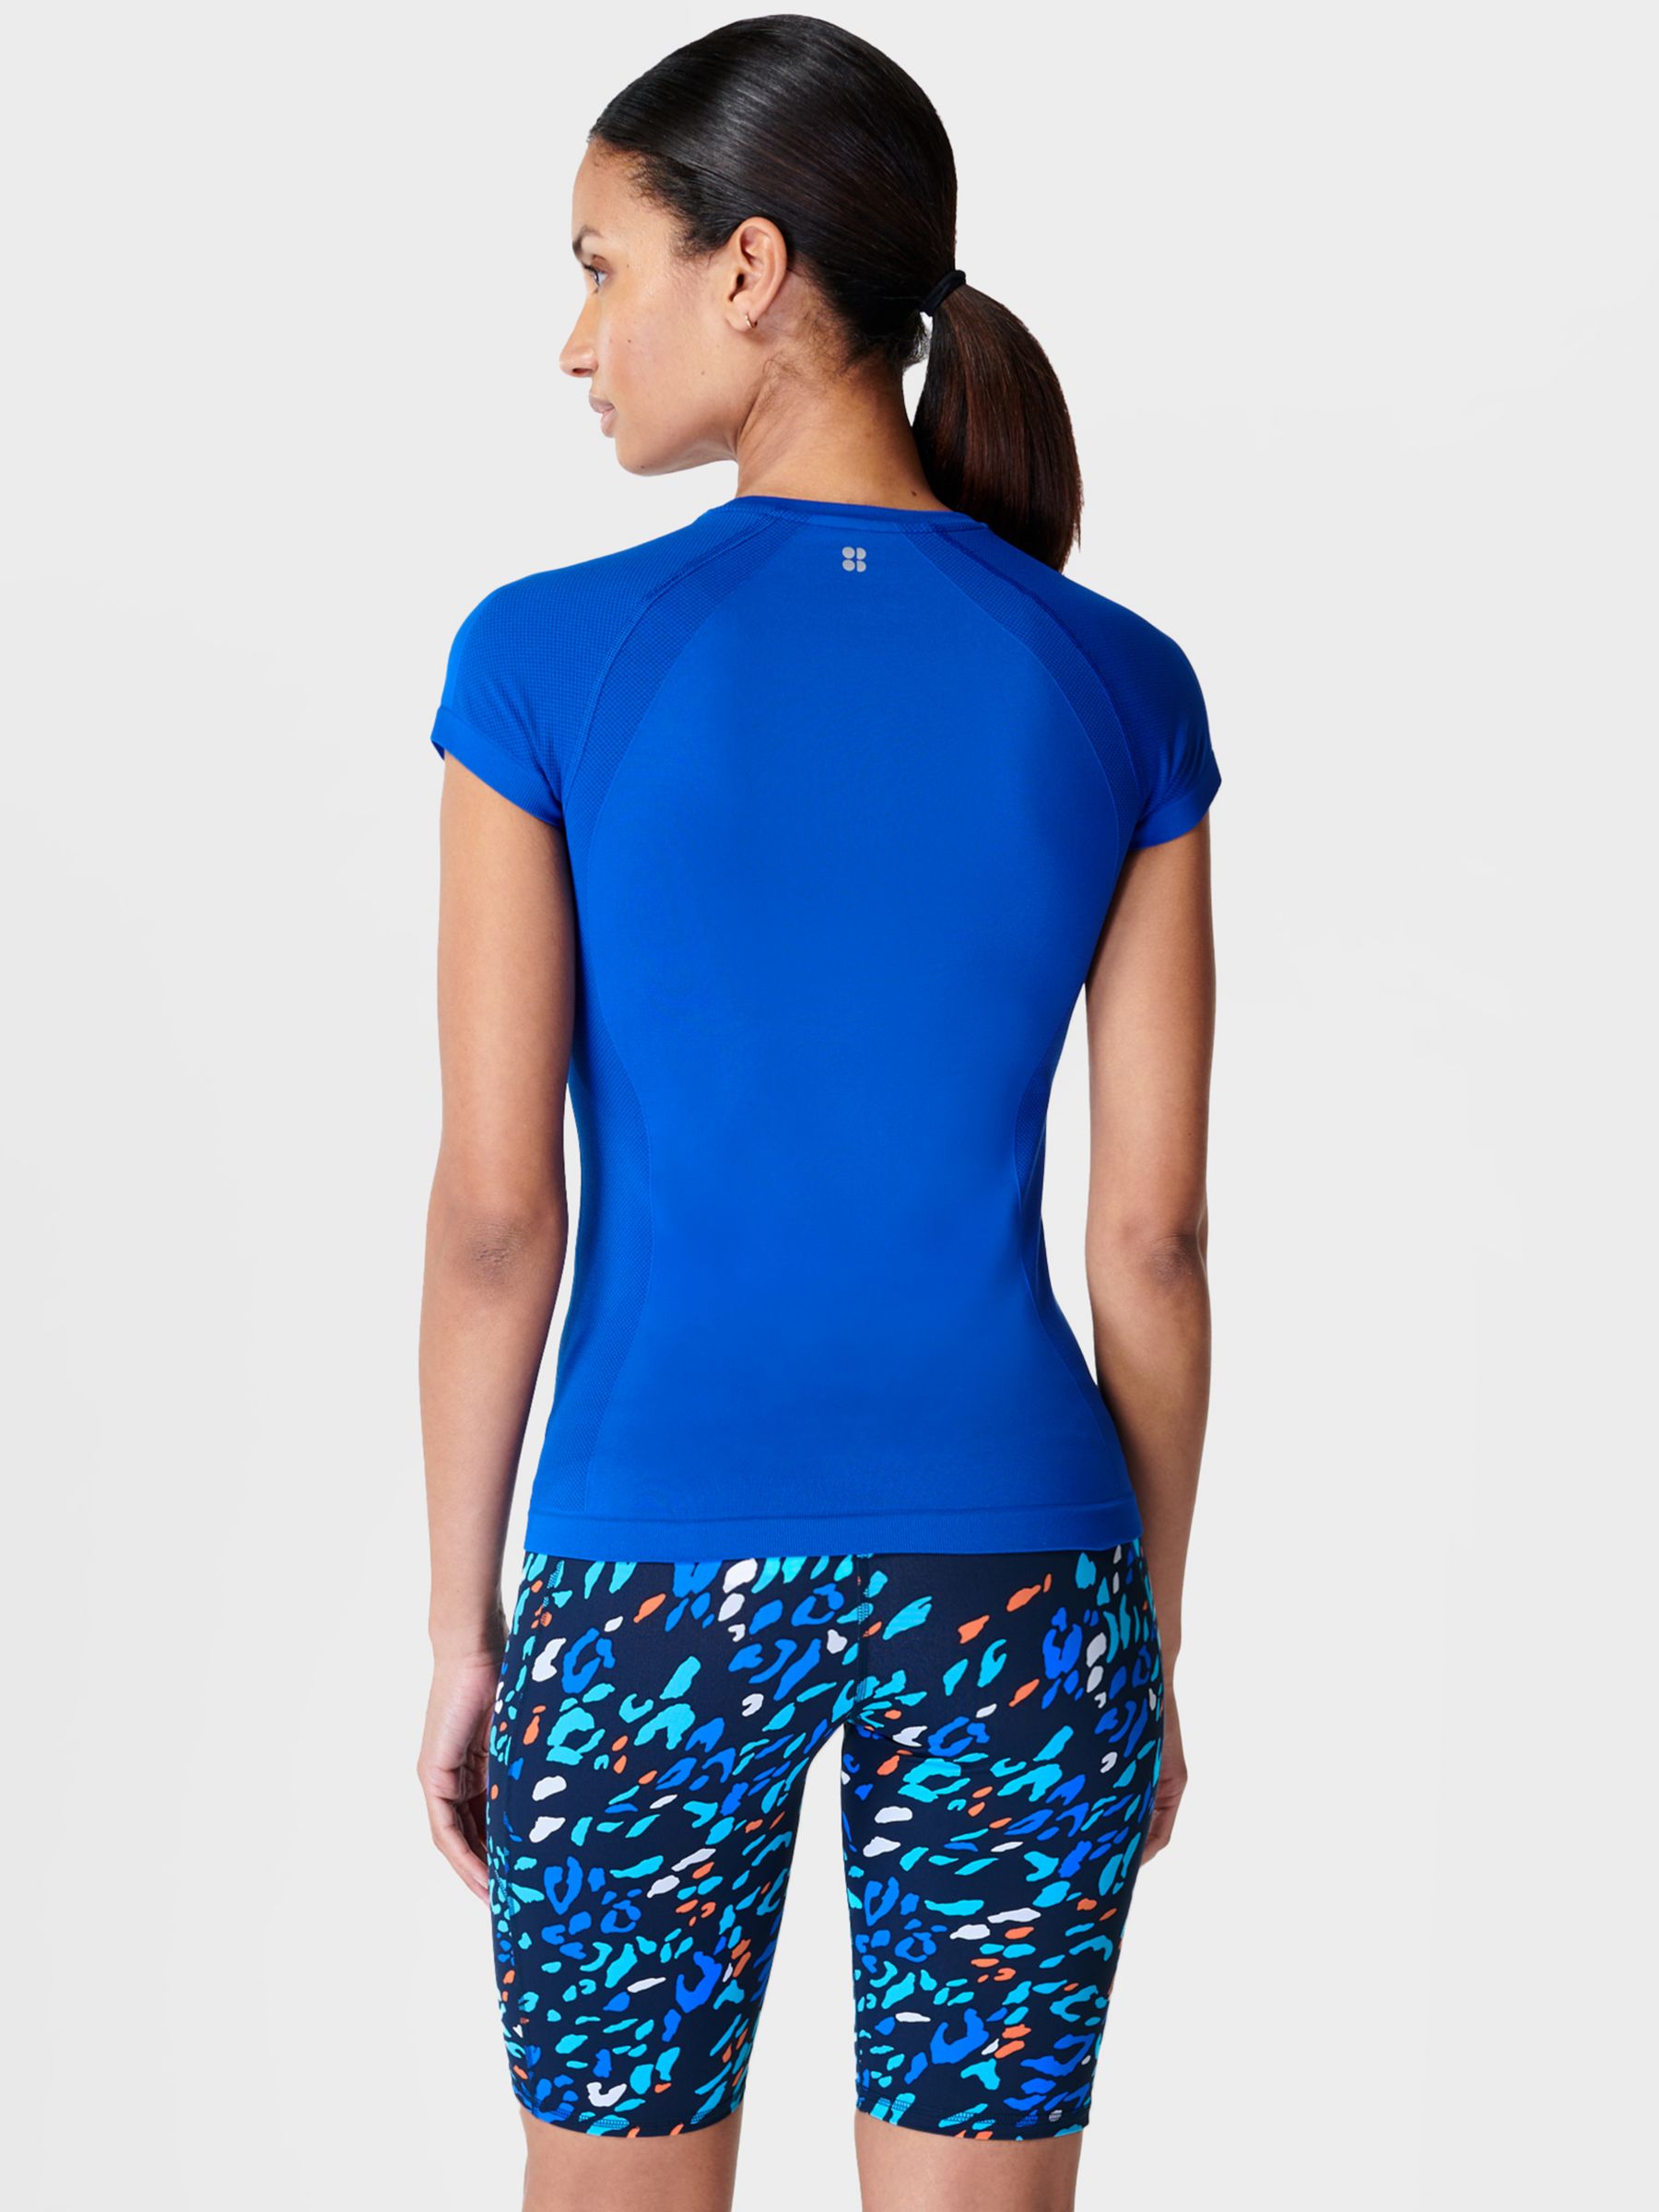 Sweaty Betty Athlete Seamless Workout T-Shirt, Lightning Blue